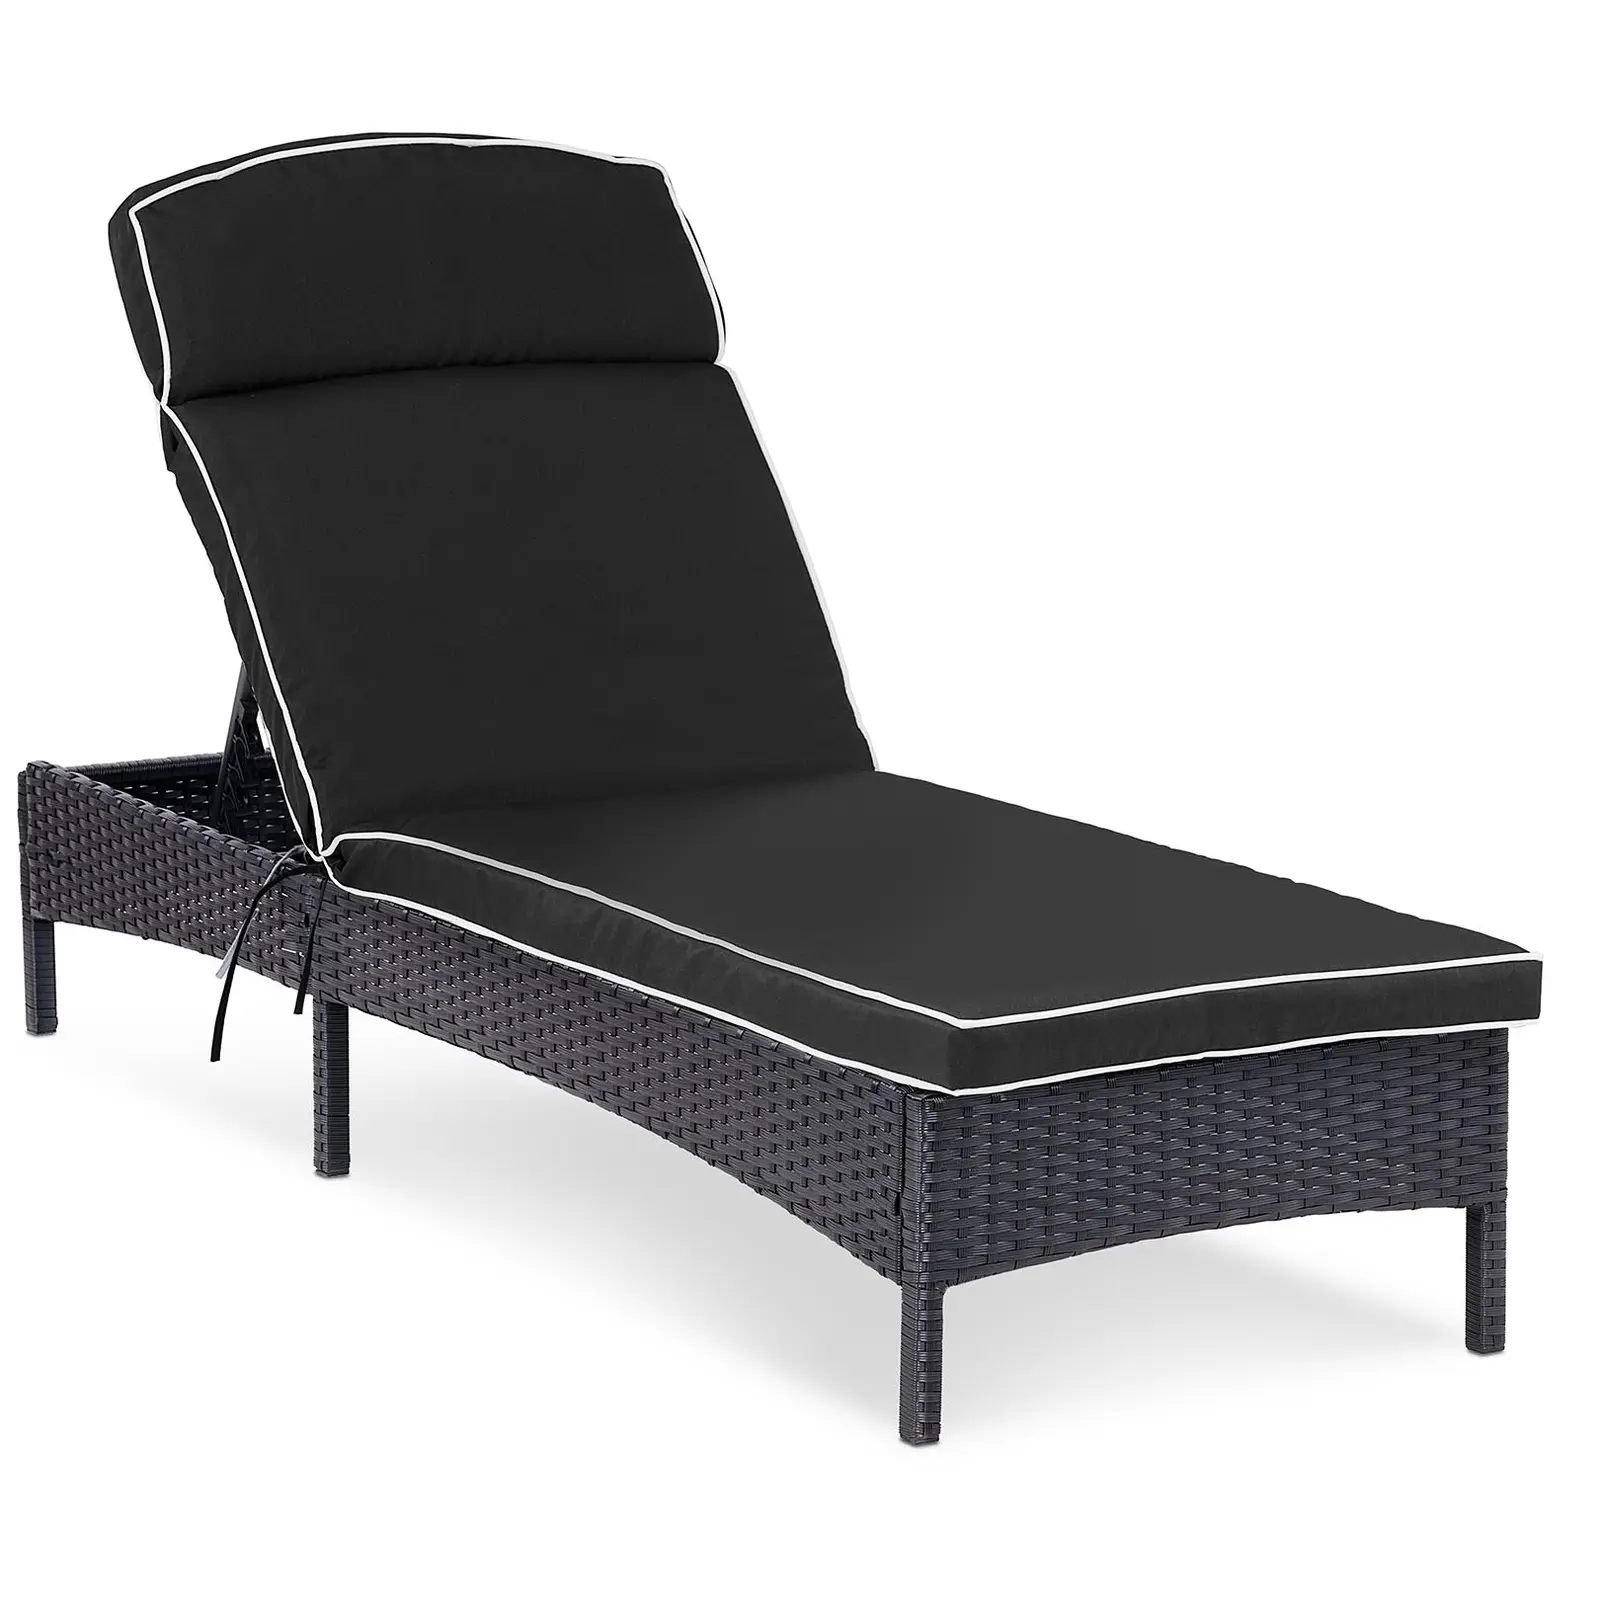 Sunbed - black - rattan - adjustable backrest